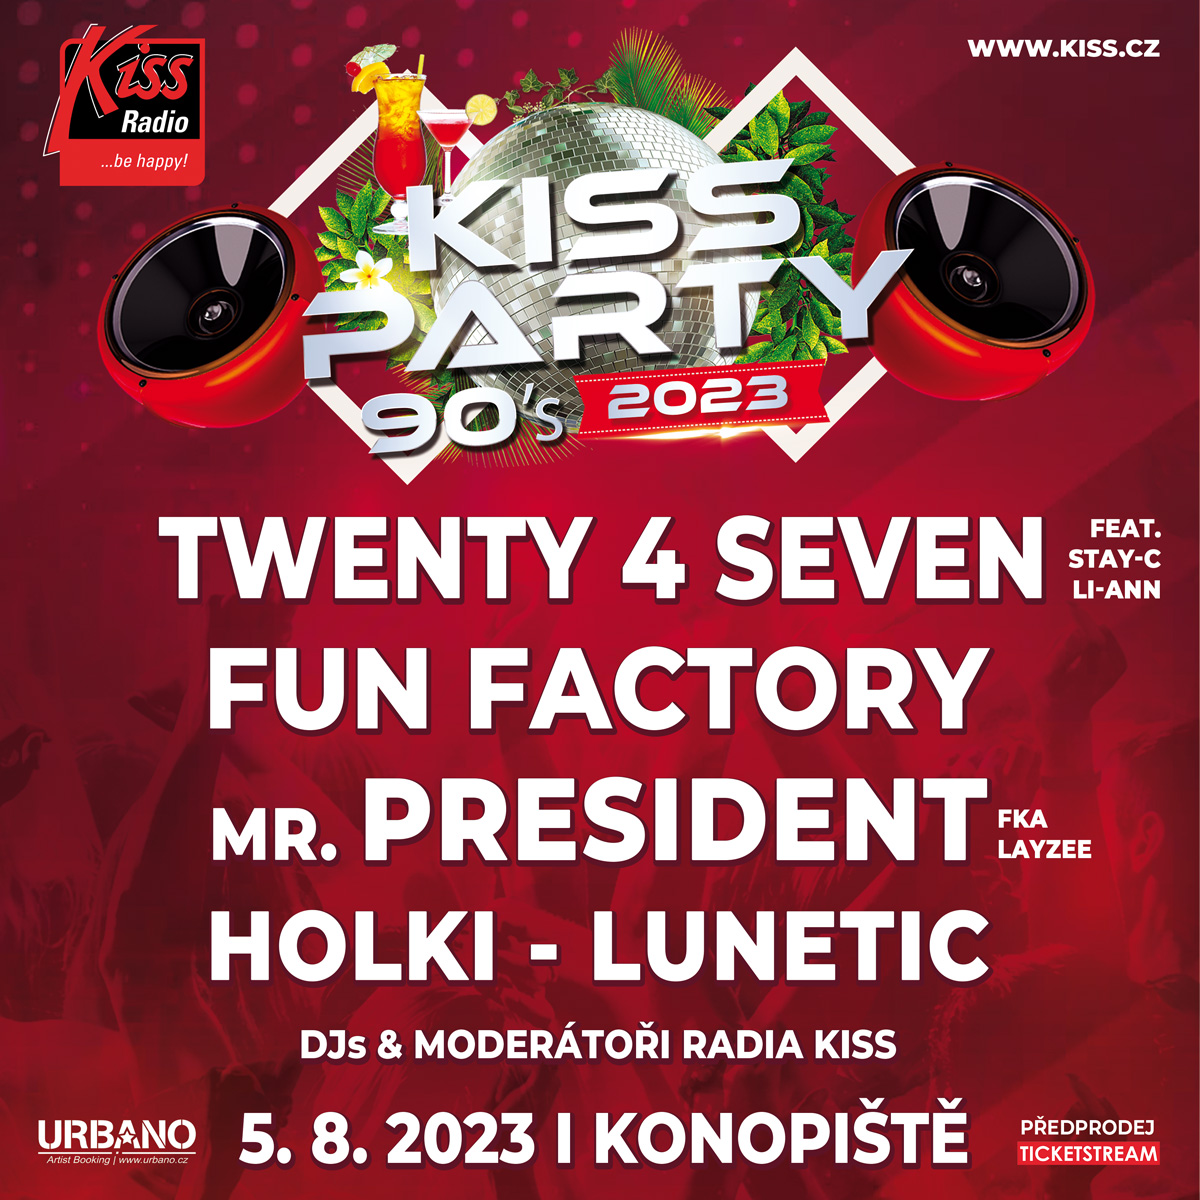 KISS PARTY 90S KONOPIŠTĚ- festival Benešov u Prahy- FUN FACTORY, TWENTY 4 SEVEN, MR President, Holki, Lunetic -Přírodní amfiteátr Konopiště Benešov u Prahy